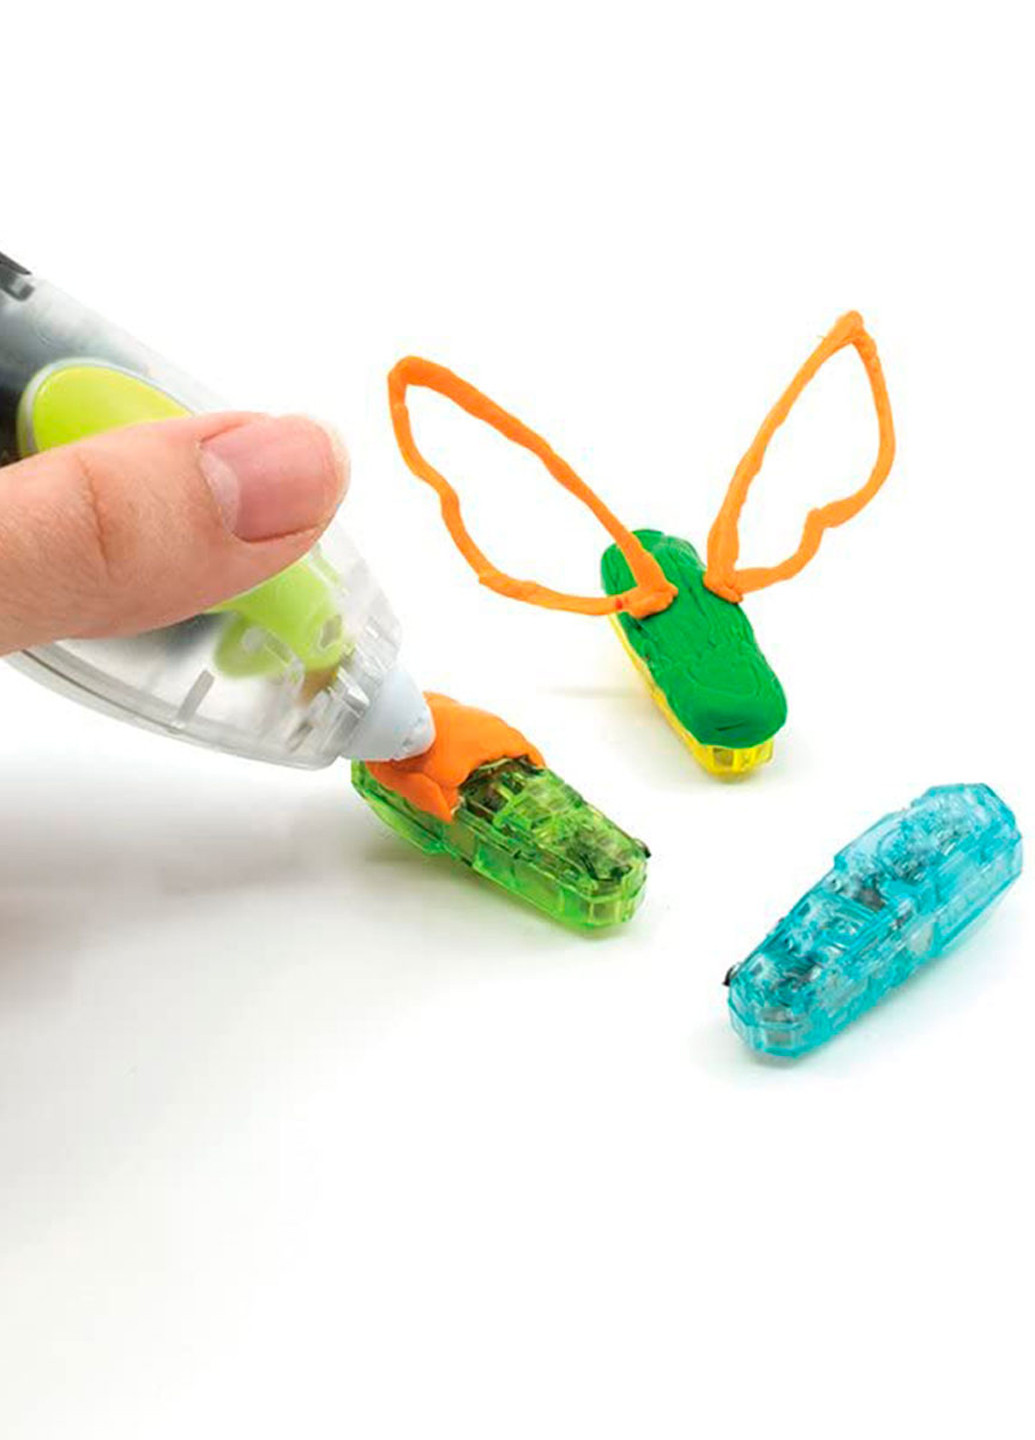 3D-ручка для детского творчества - Hexbug 3Doodler Start (200823368)